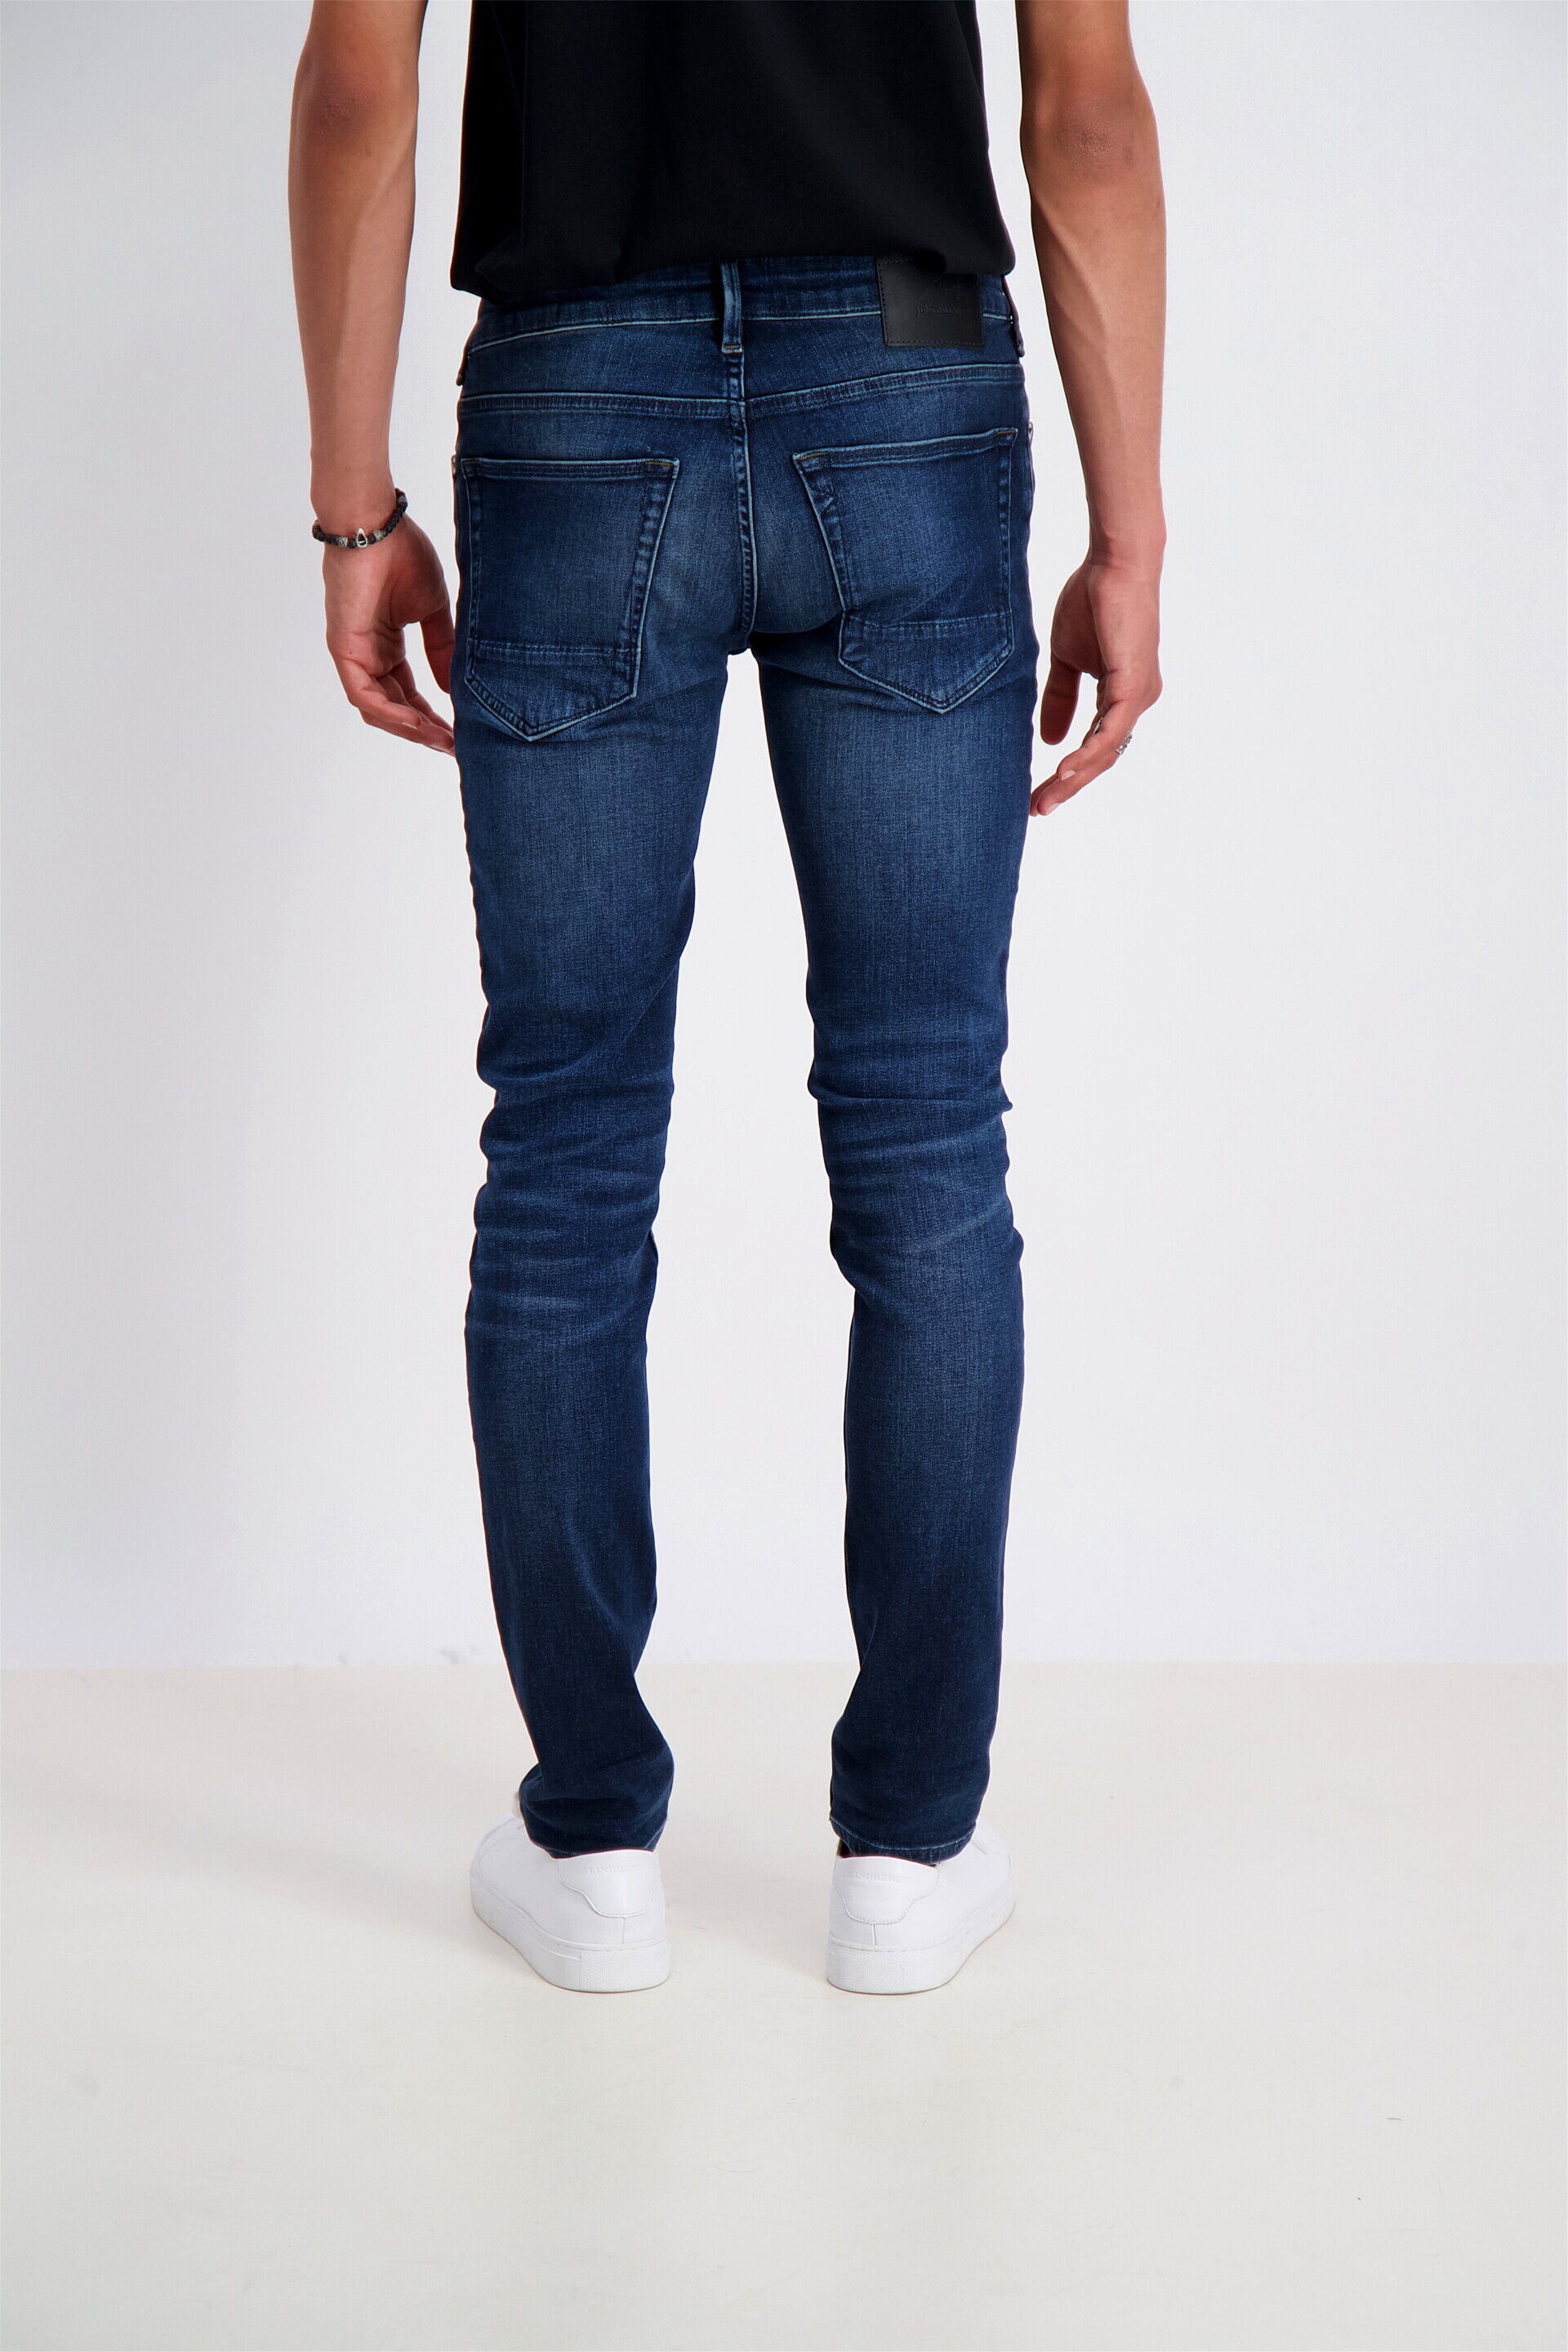 Junk de Luxe  Jeans 60-025005